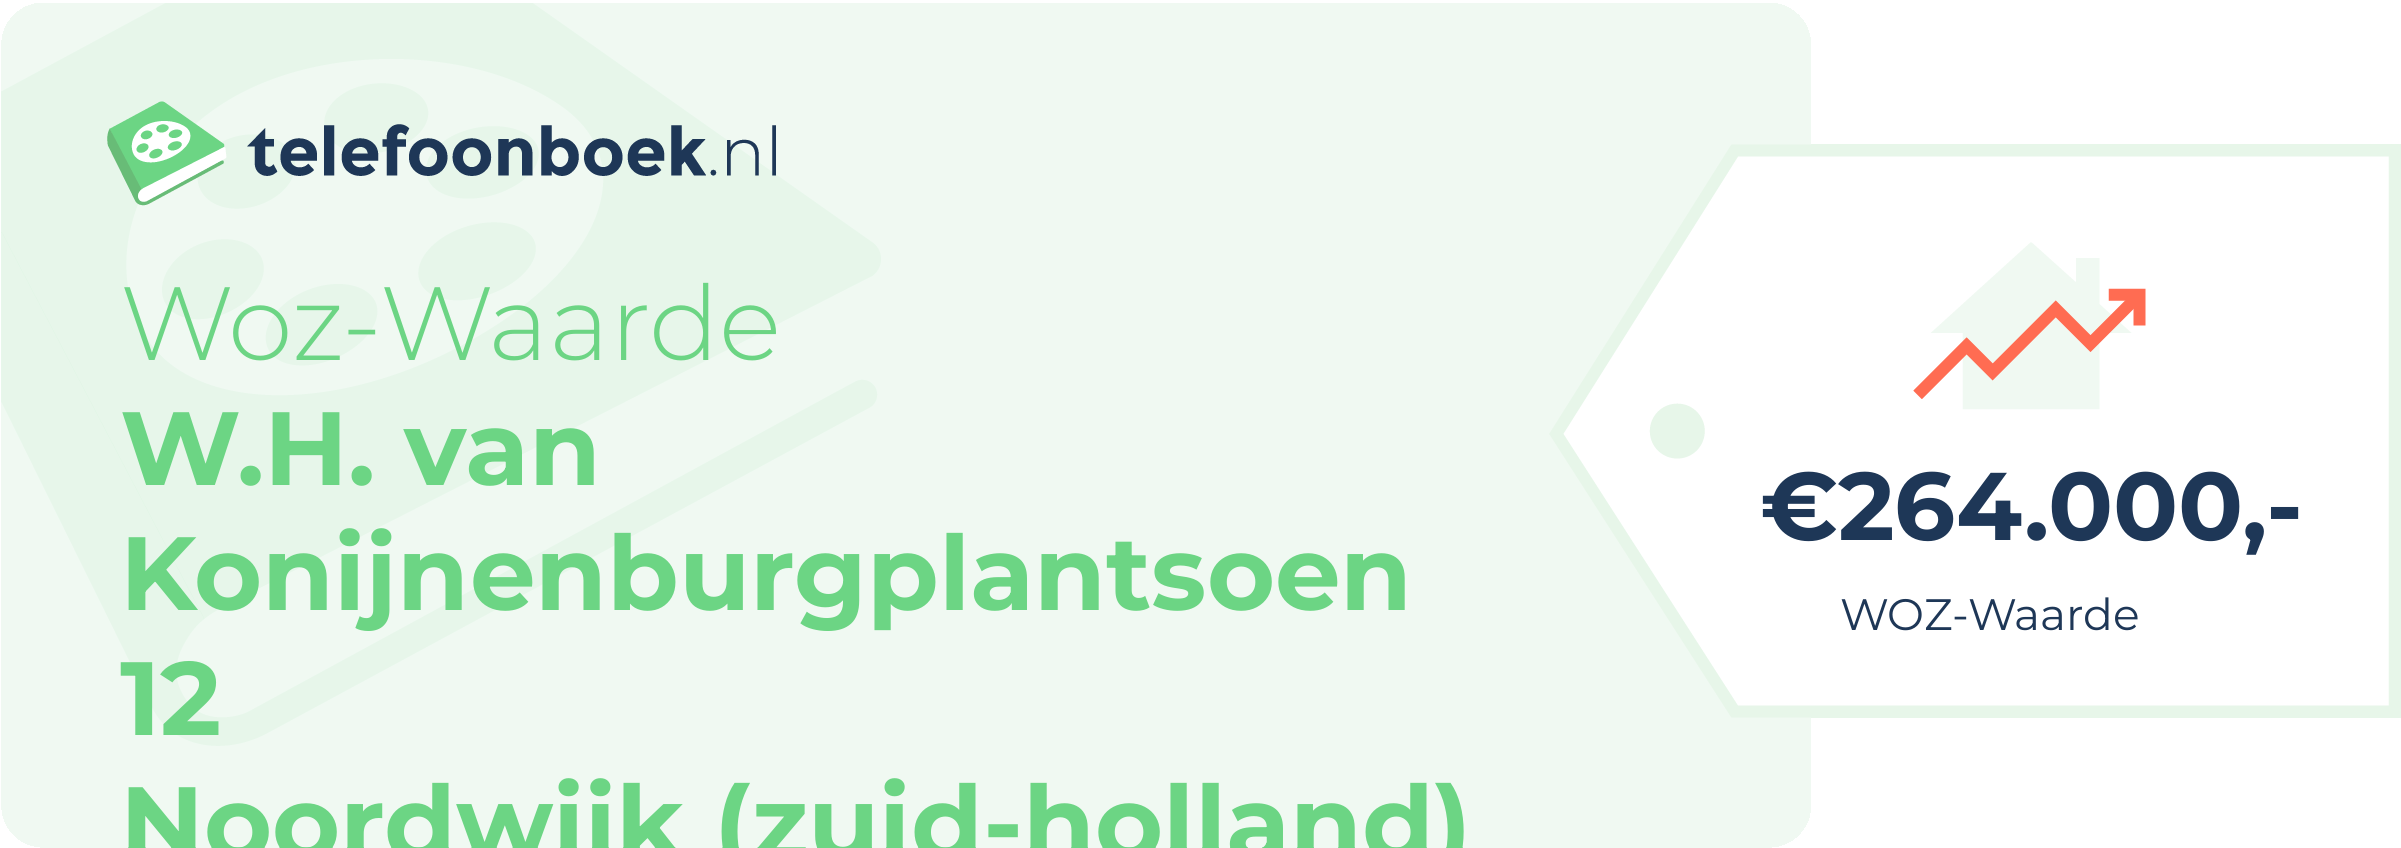 WOZ-waarde W.H. Van Konijnenburgplantsoen 12 Noordwijk (Zuid-Holland)